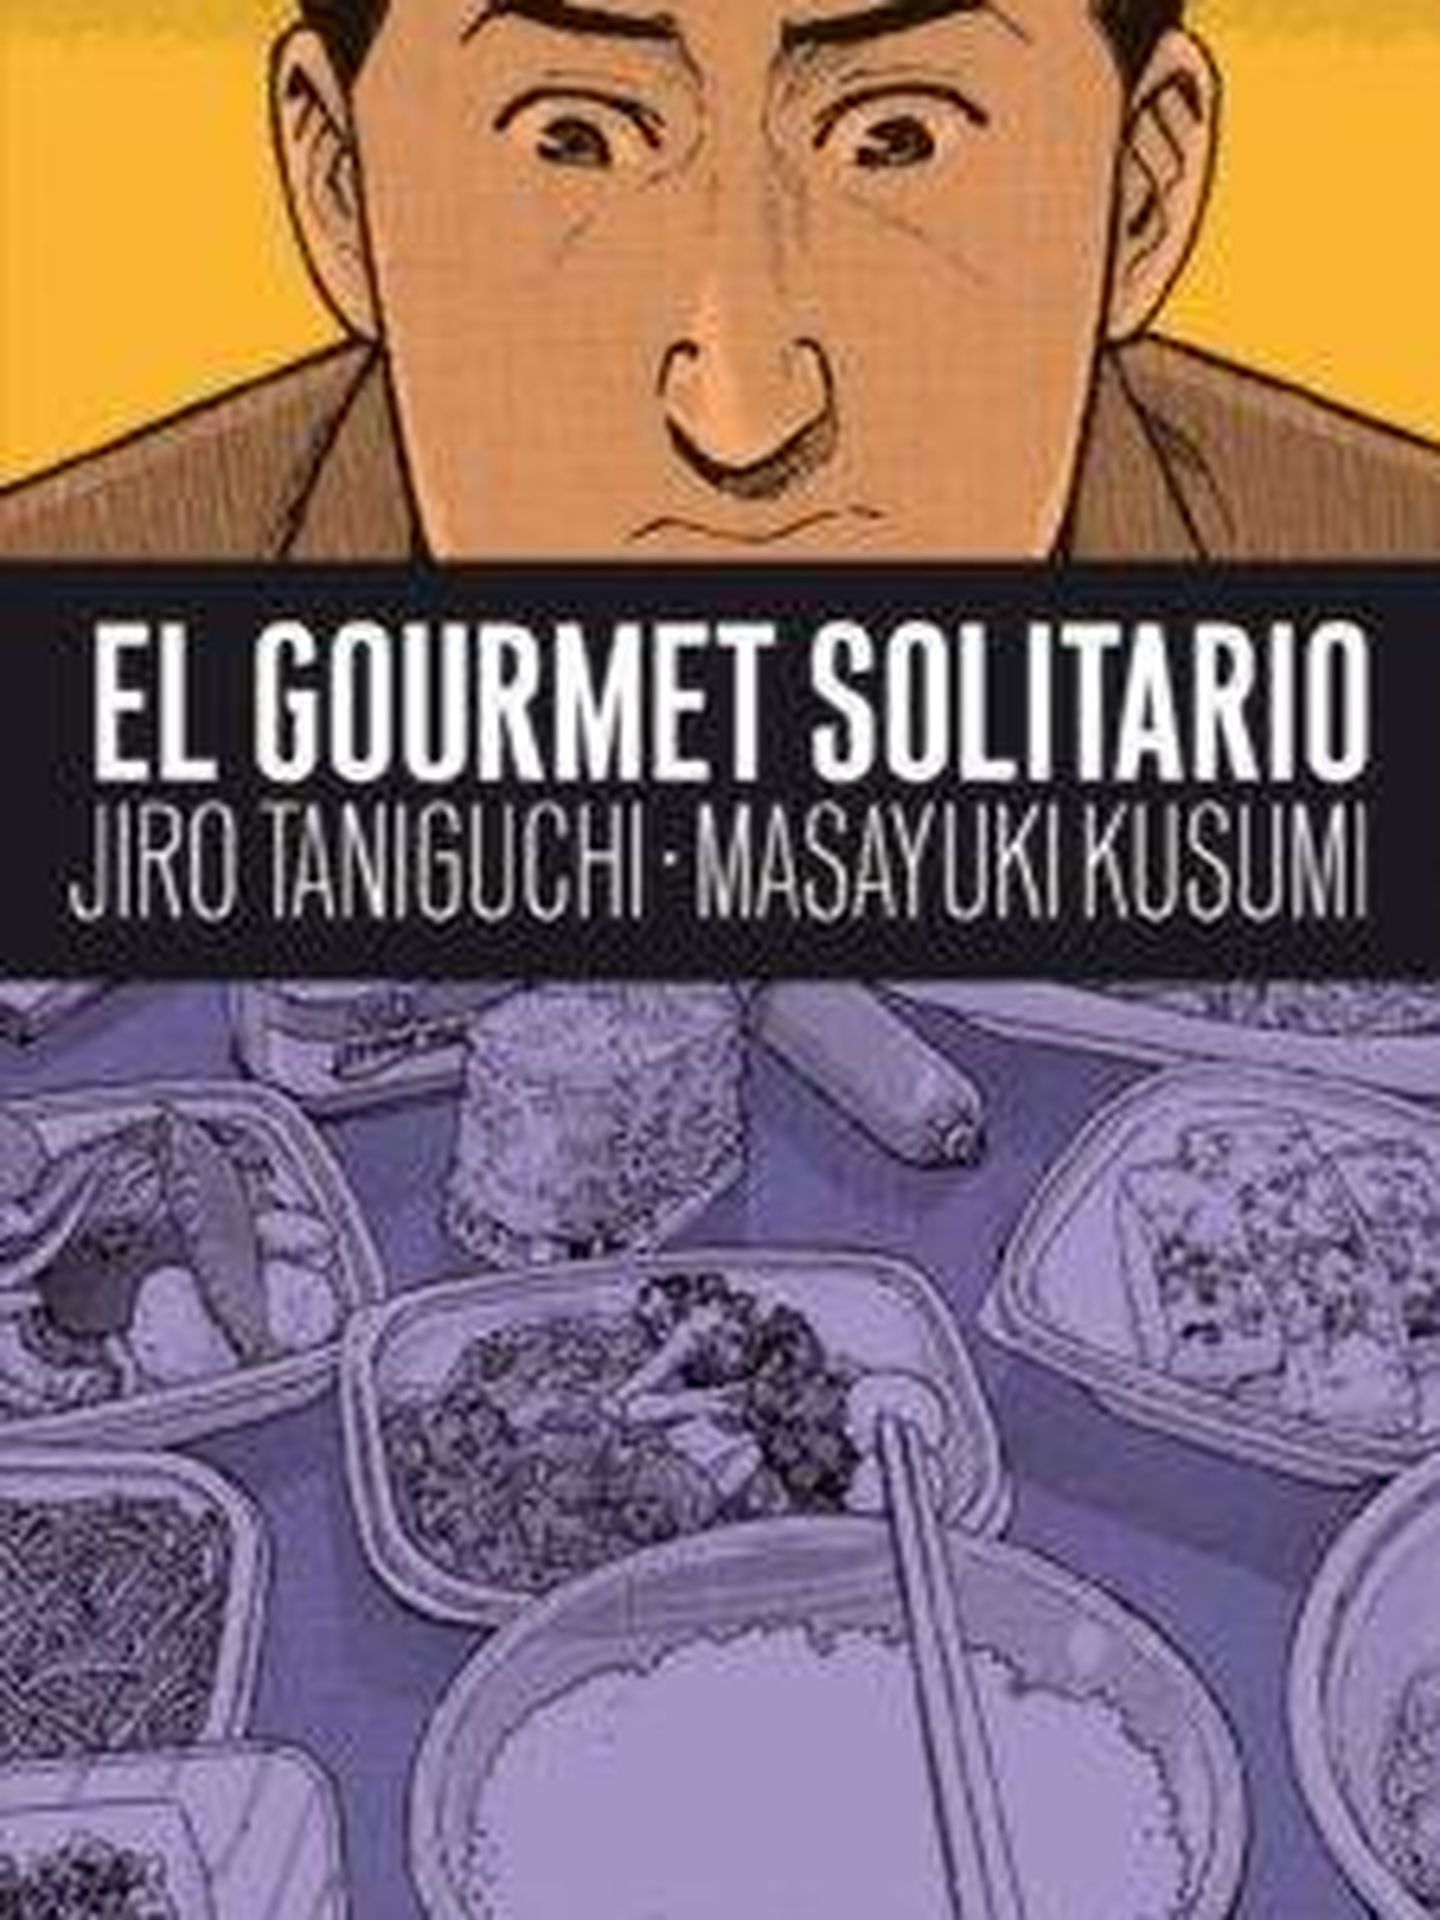 'El gourmet solitario'.